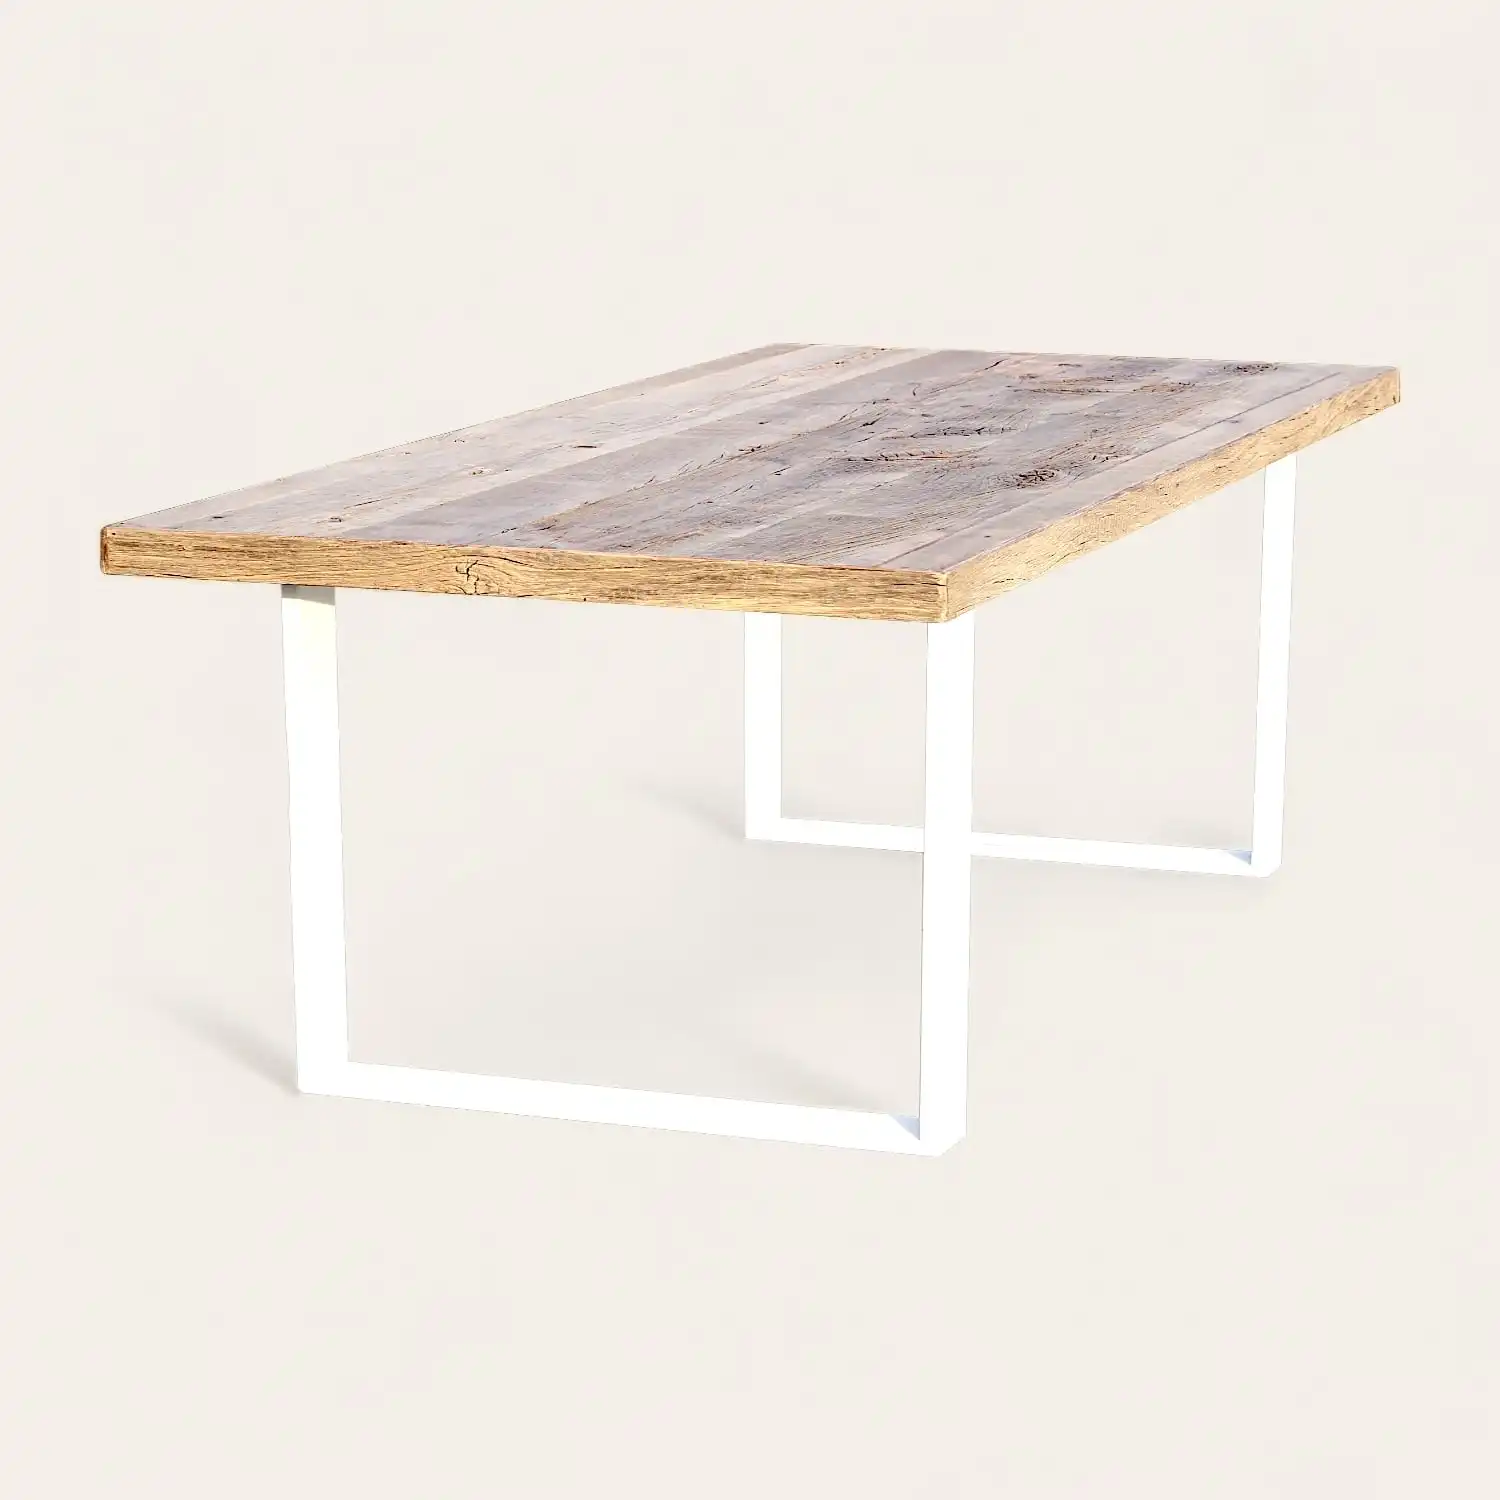  Une table ancienne sur mesure avec un plateau en bois blanc. 